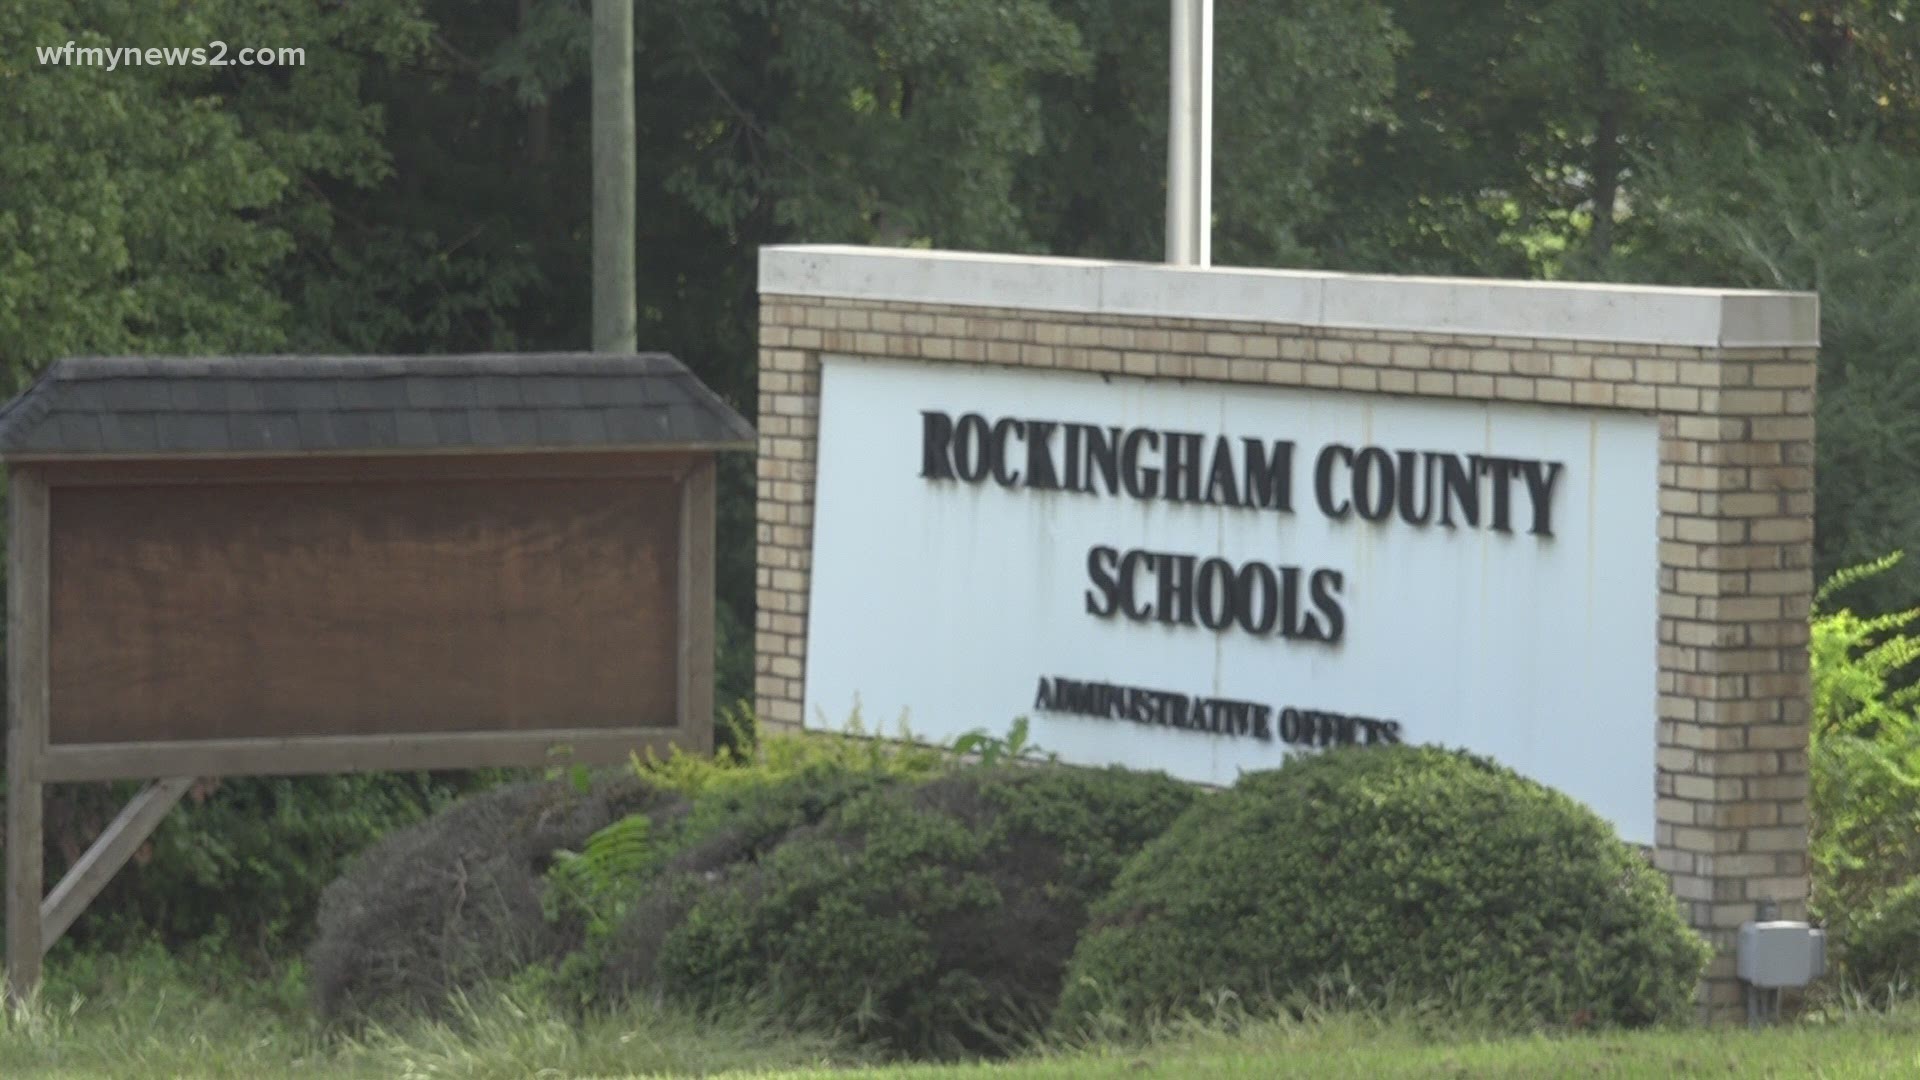 Rockingham County re-opens September 21 | wfmynews2.com